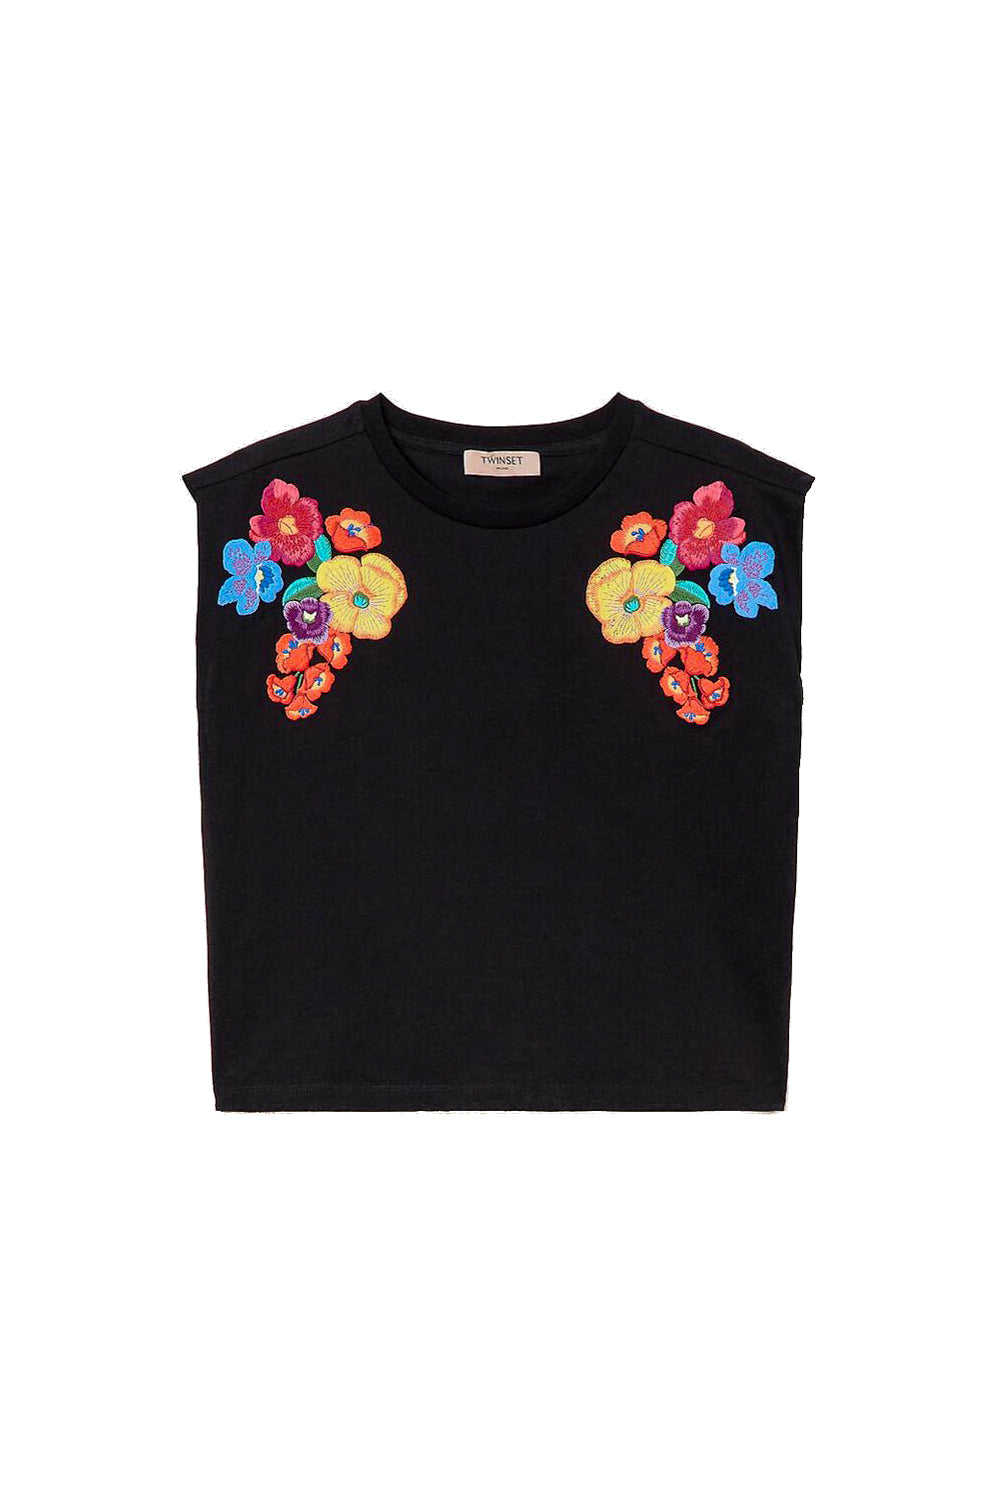 TWINSET T-shirt con ricamo a fiori multicolor nera - Mancinelli 1954